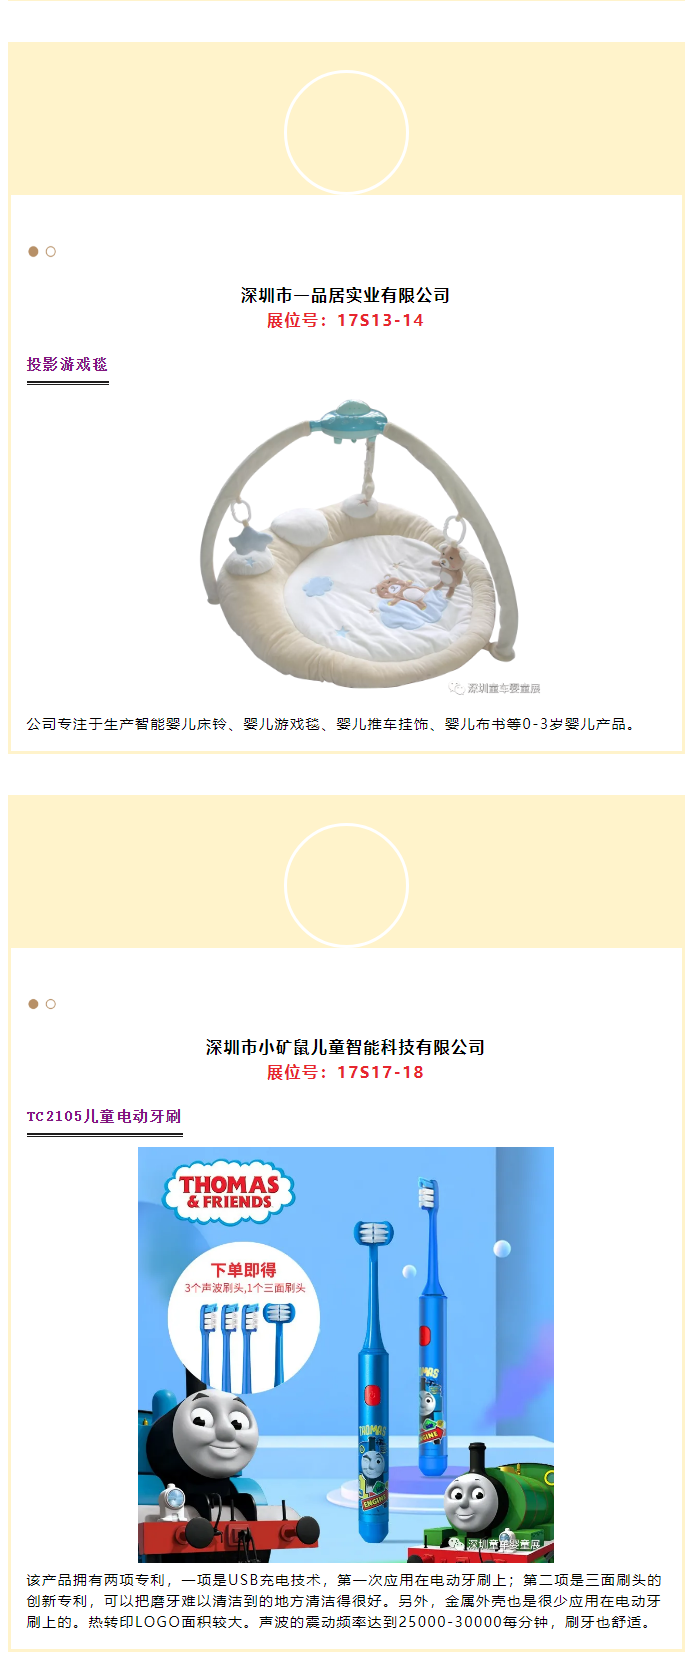 2021深圳童车婴童展大批新品即将登场_r18_c1